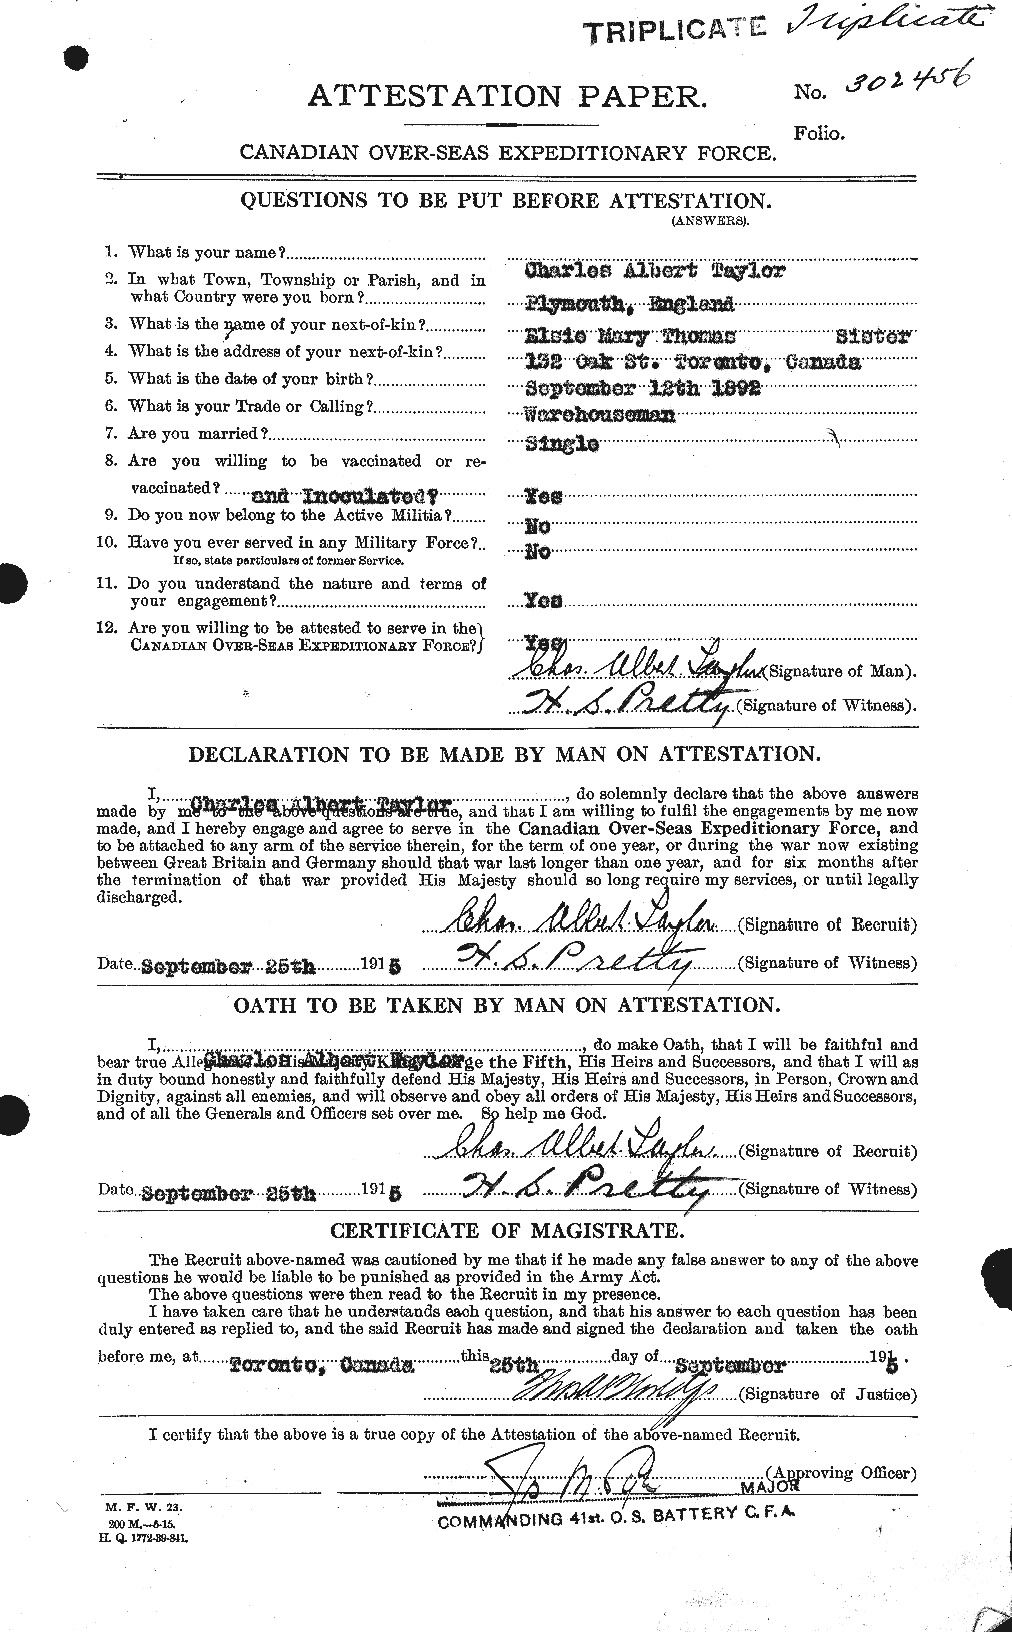 Dossiers du Personnel de la Première Guerre mondiale - CEC 626828a